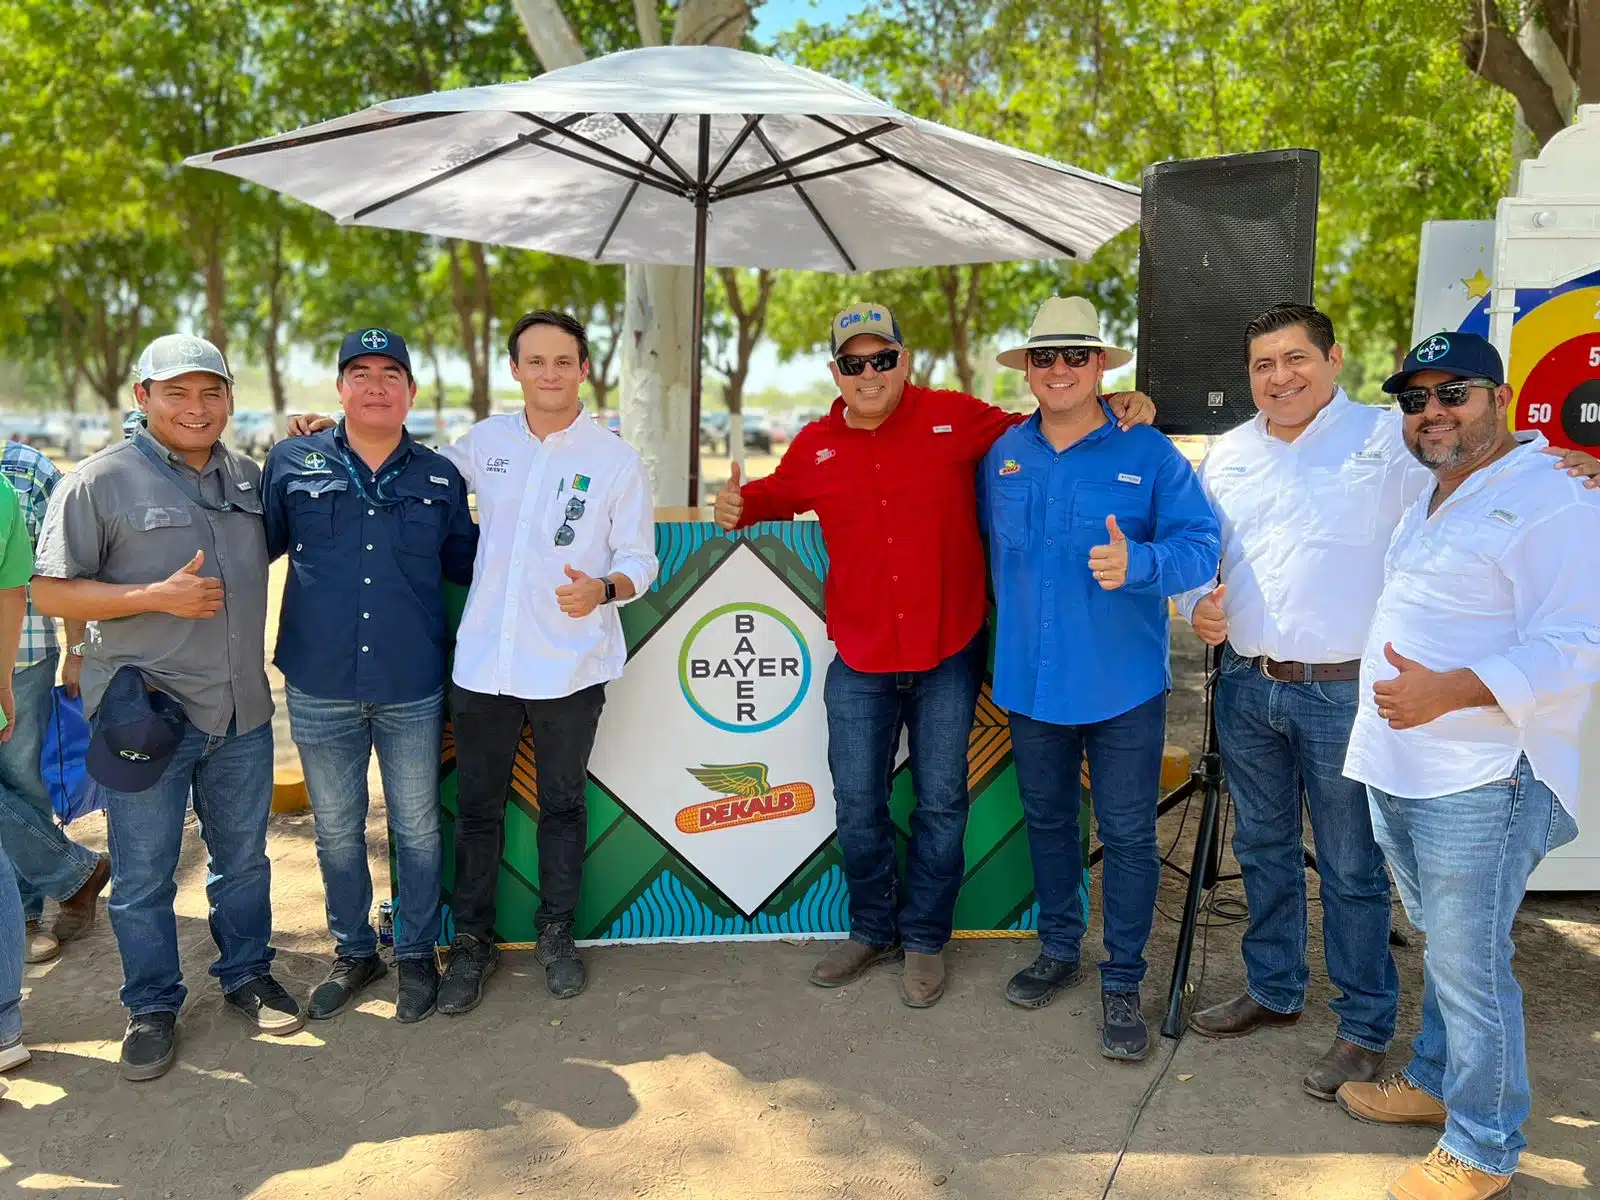 LOF Orienta agradeció a los mejores clientes y proveedores que tiene este grupo dedicado a ofrecer soluciones para el campo mexicano.